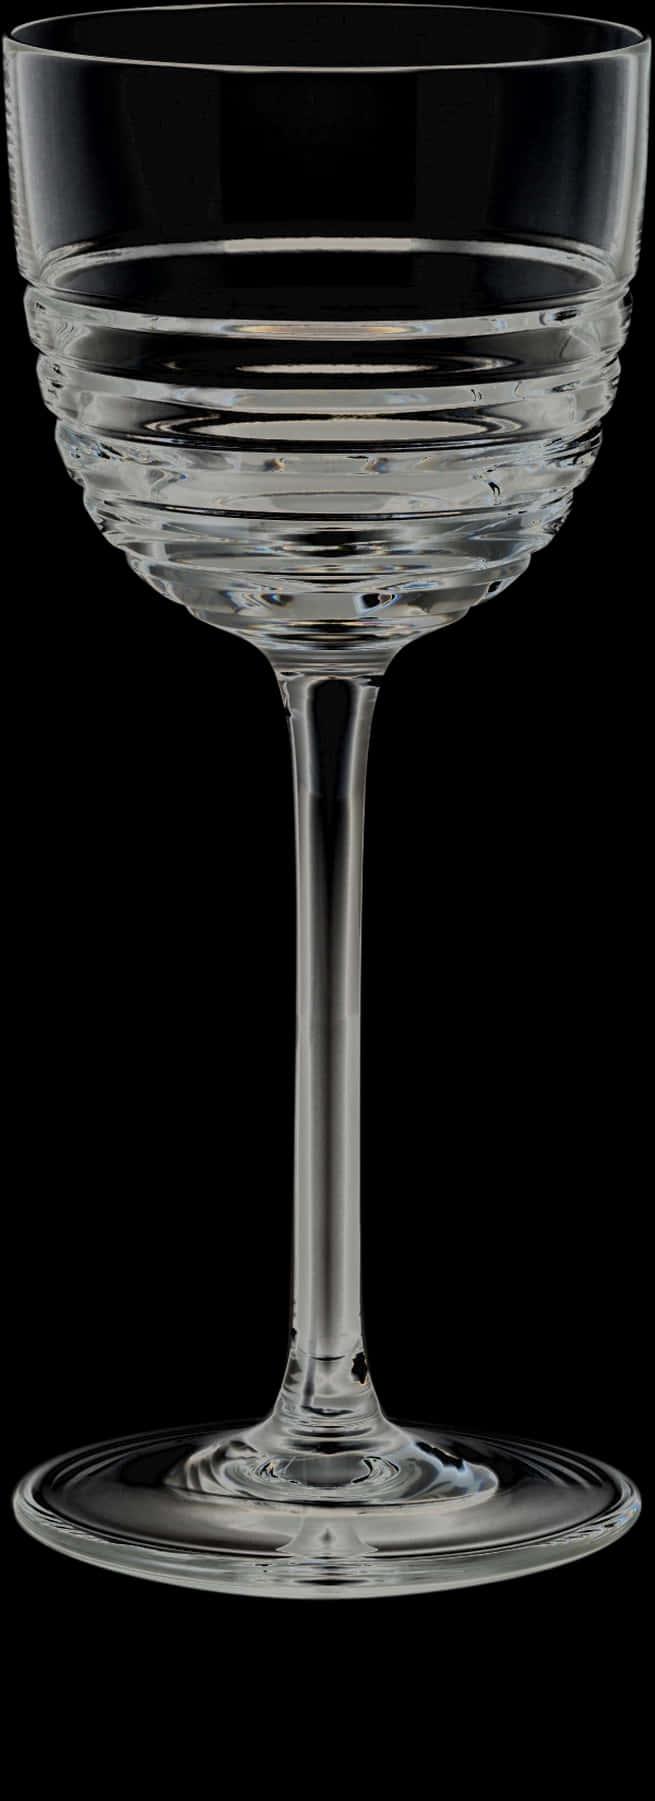 Elegant Stemmed Glassware PNG image